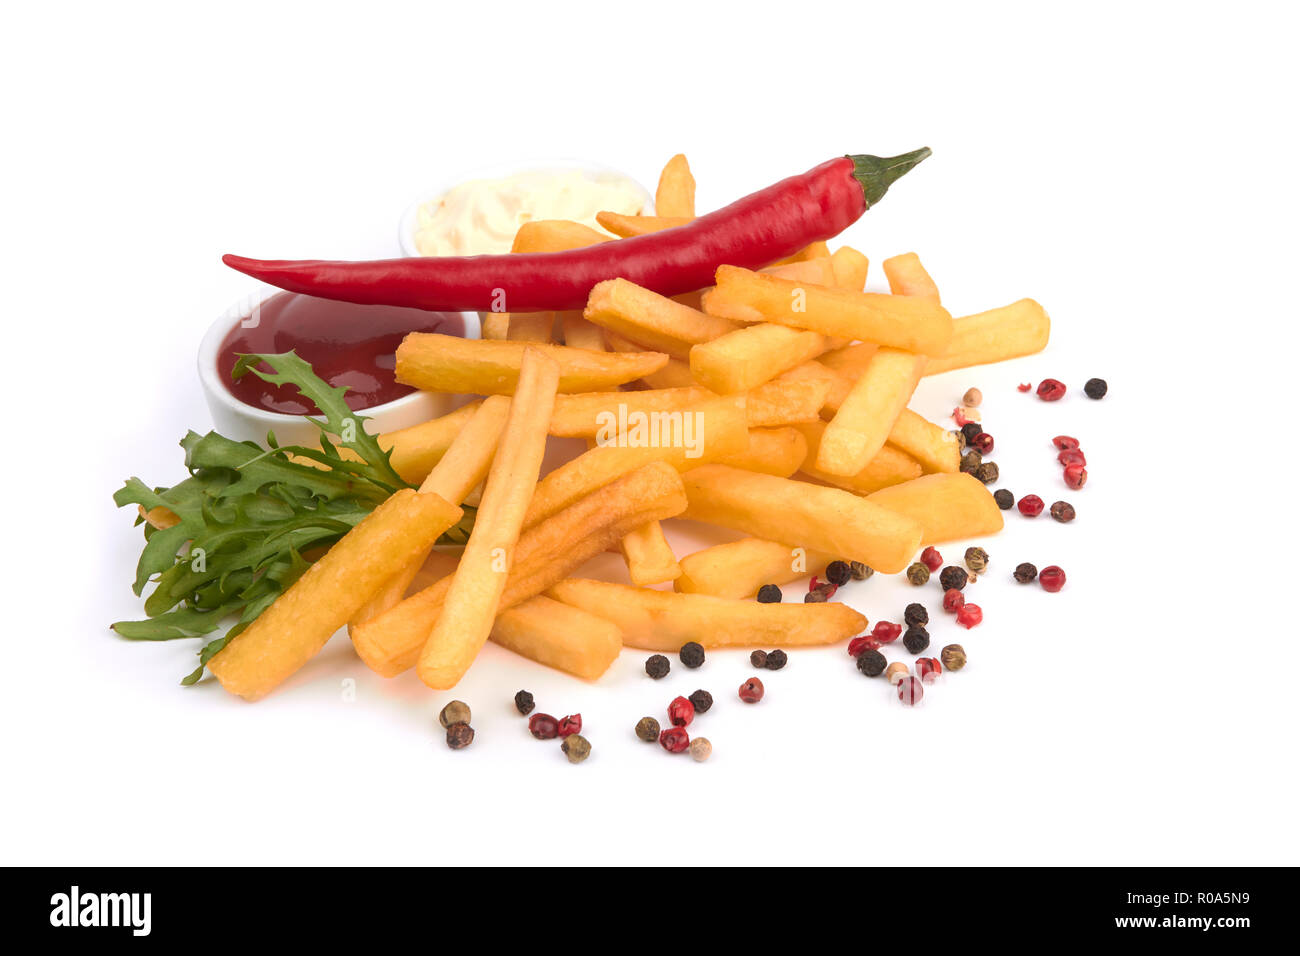 Les frites avec du ketchup sur blanc Banque D'Images